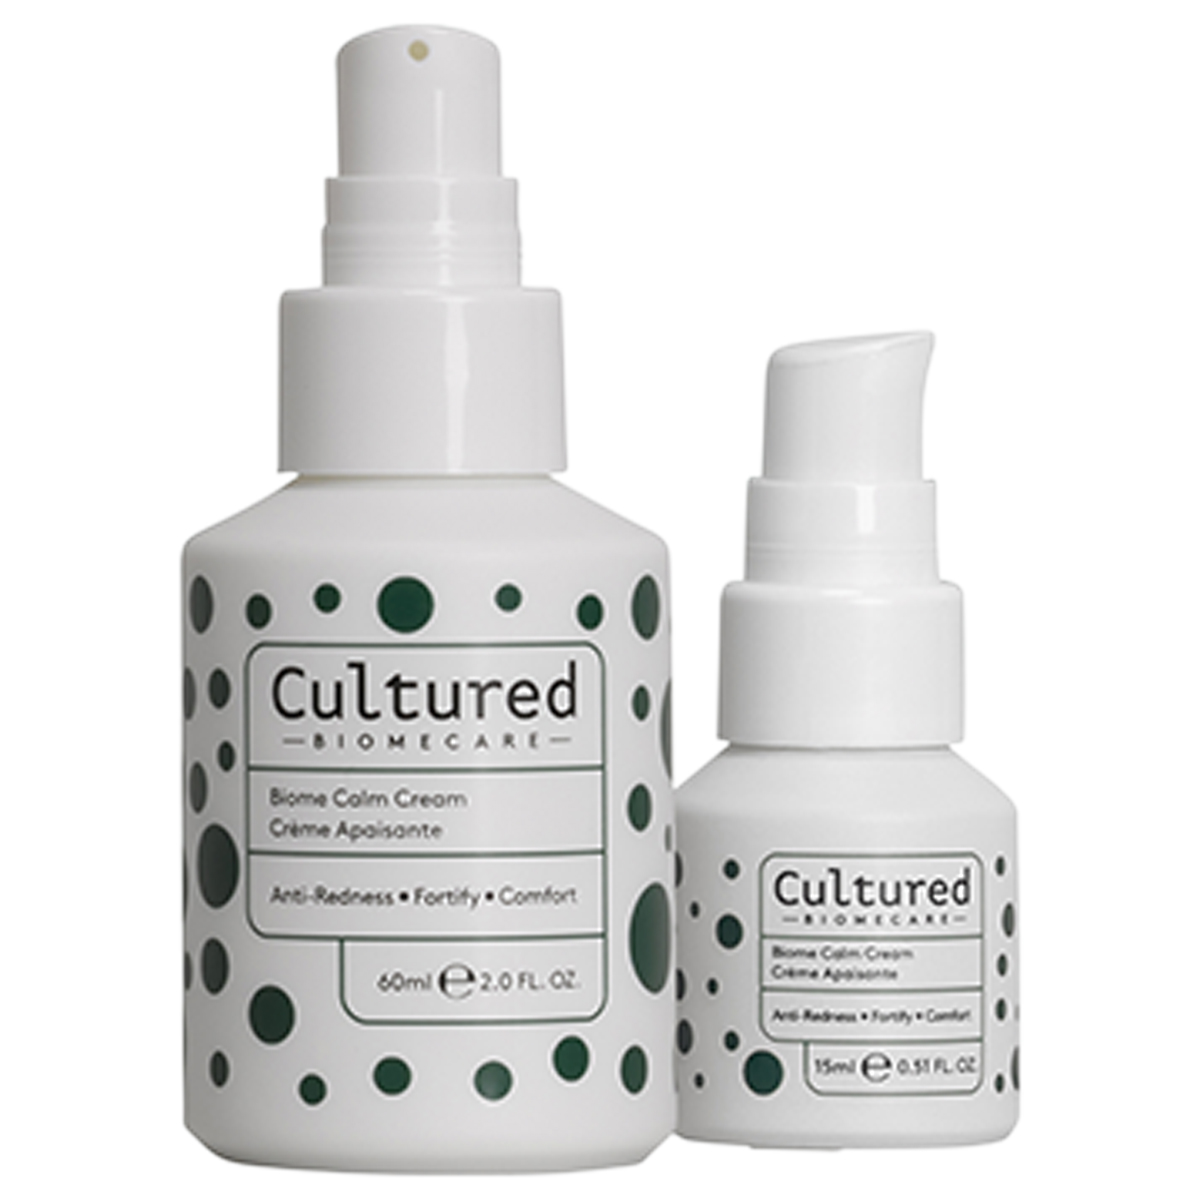 Cultured - Biome Calm Cream